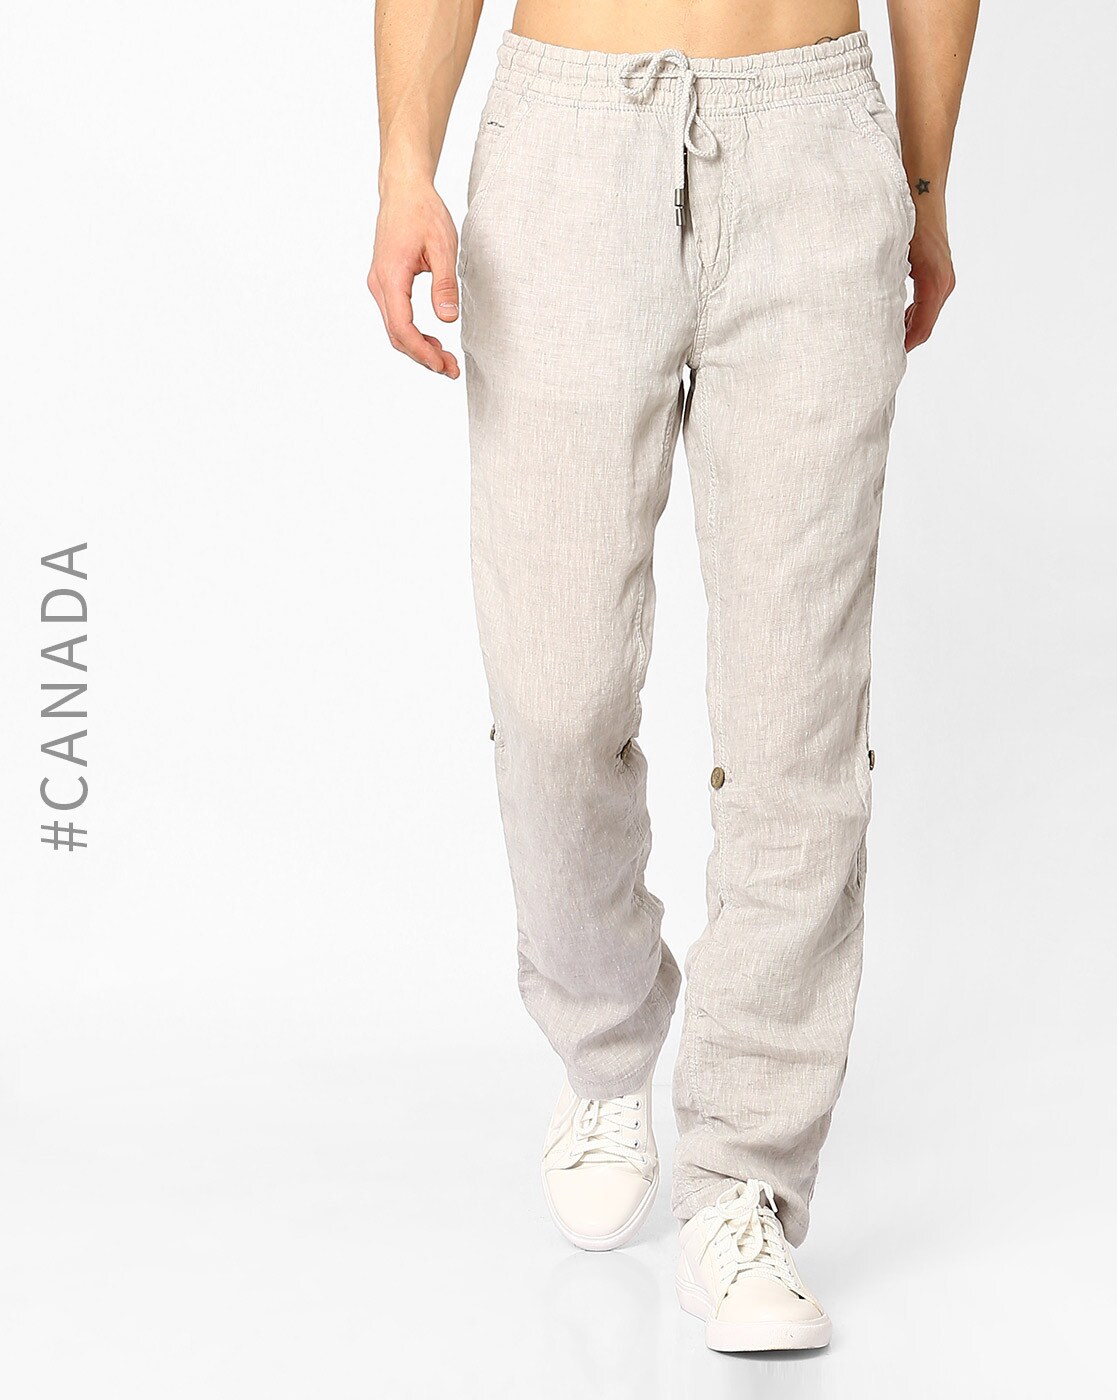 Buy Ecru Trousers  Pants for Women by ProEarth Online  Ajiocom